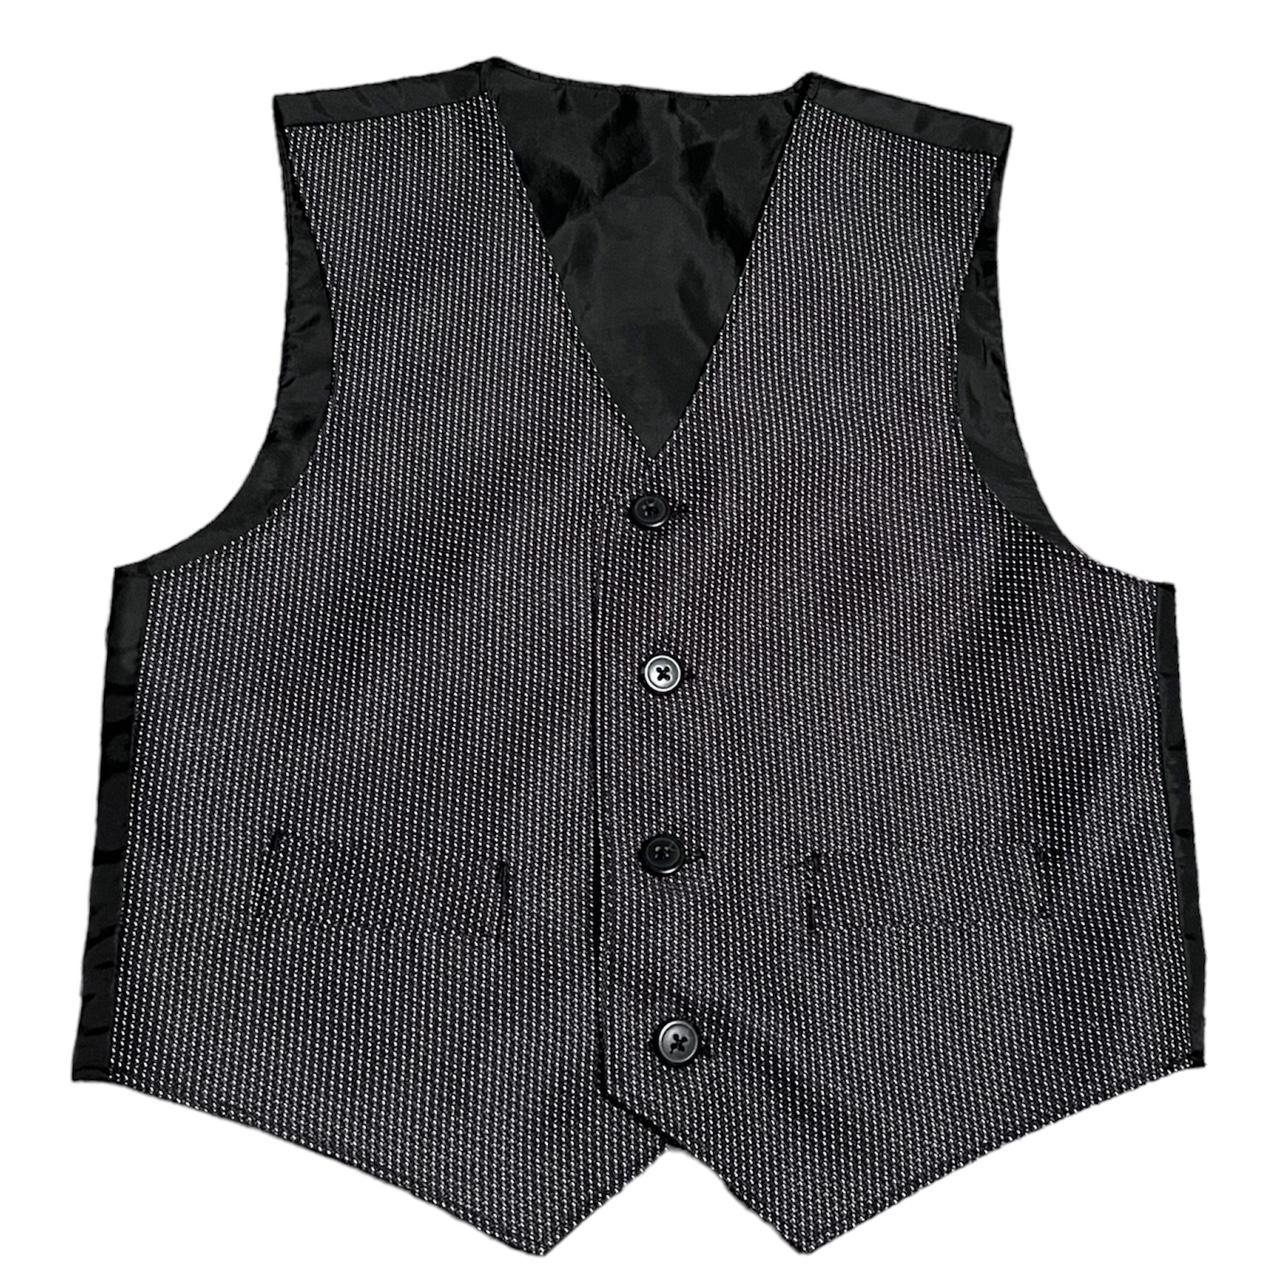 Super cute pinstripe button up vest! Child size 7... - Depop